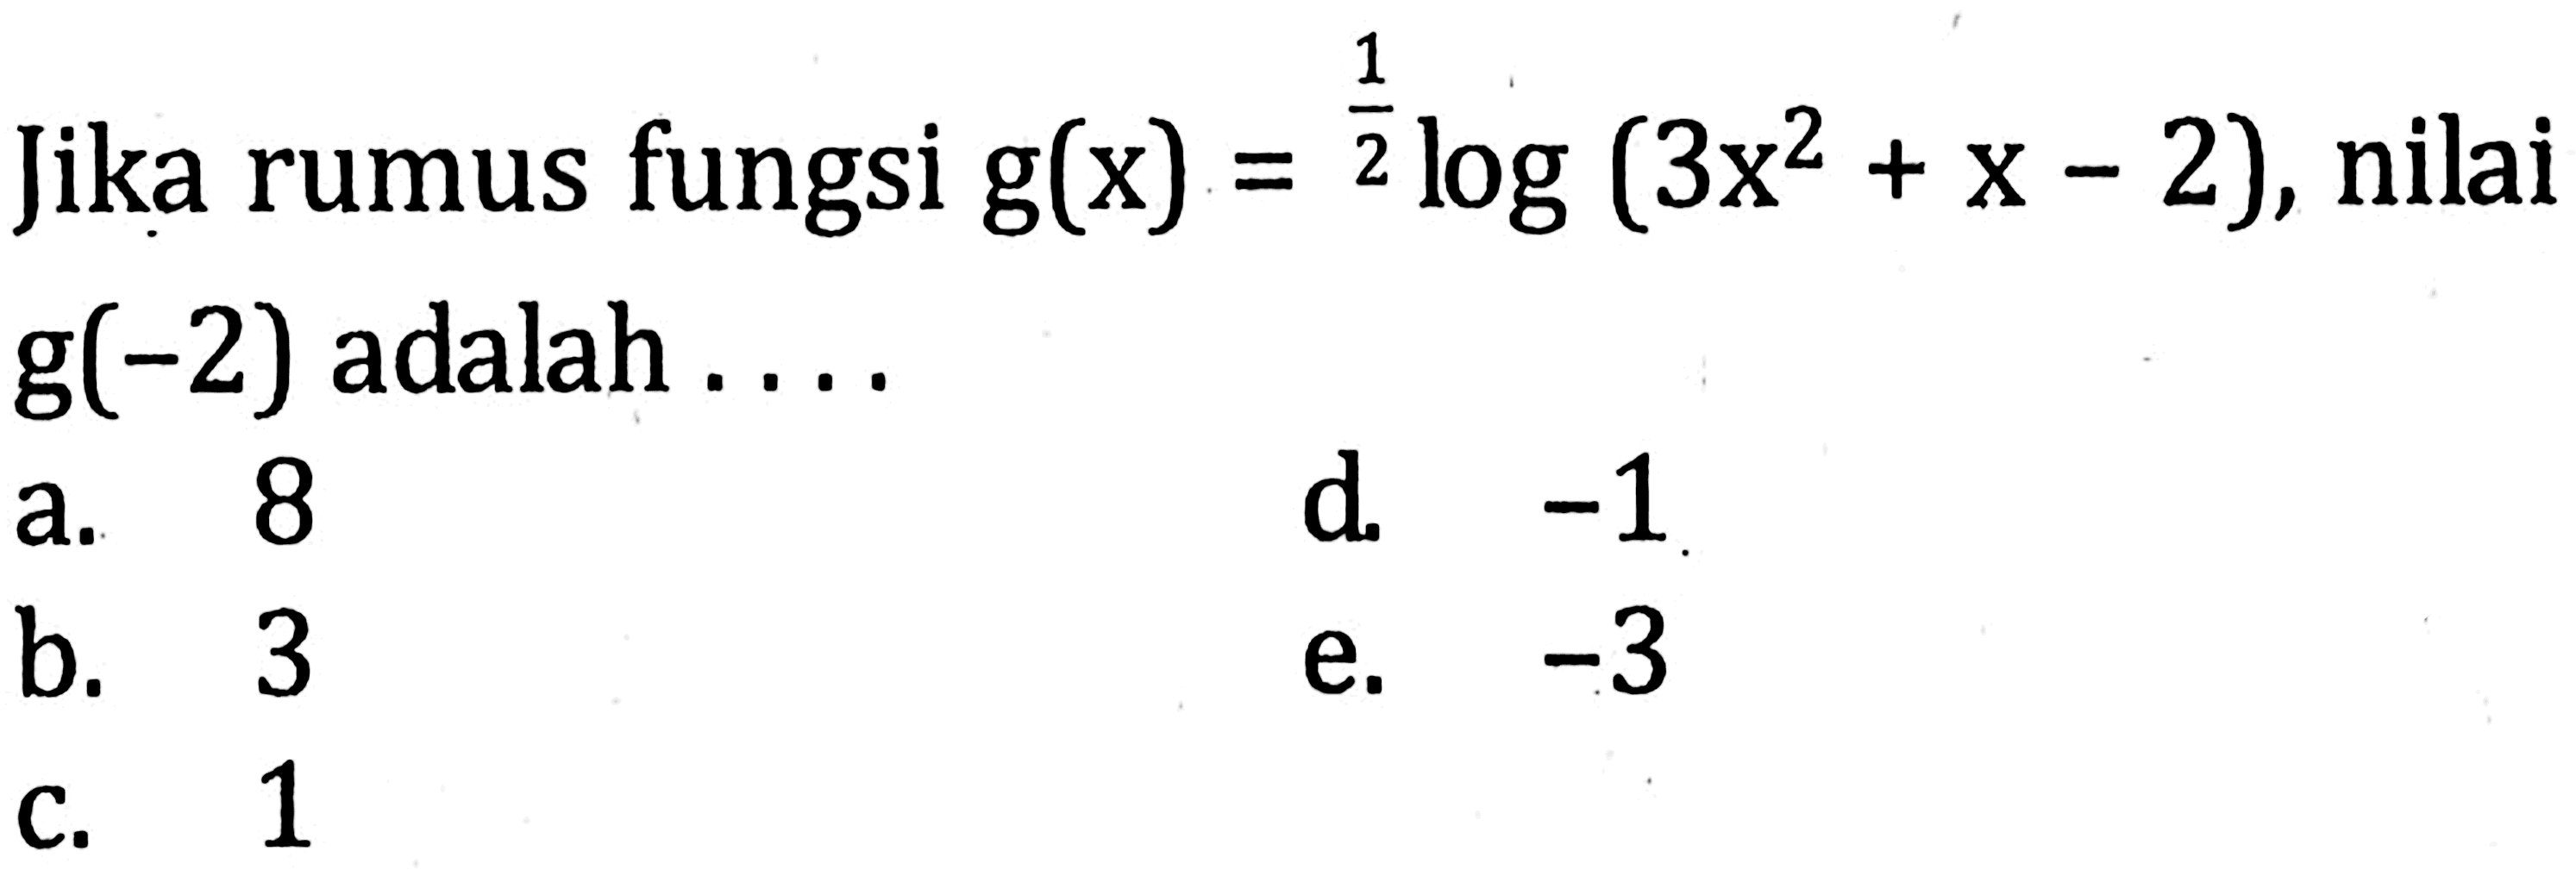 Jika rumus fungsi g(x)=(1/2)log(3x^2+x-2), nilai g(-2) adalah ....